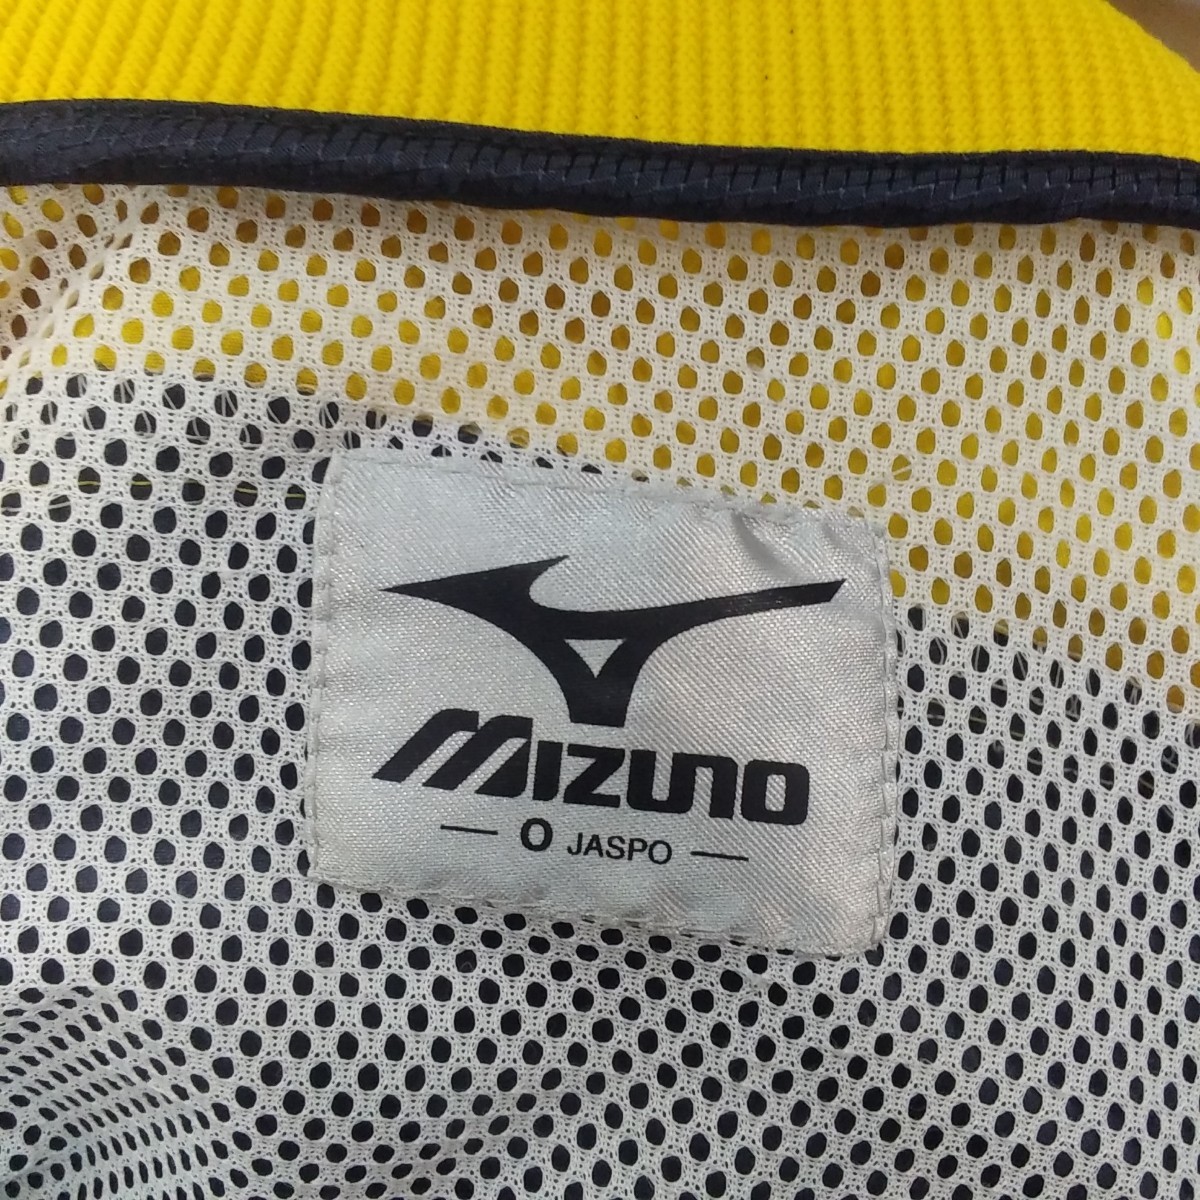  Mizuno Mizuno/ спортивная одежда / Zip выше / джерси жакет / грузовик одежда (O)